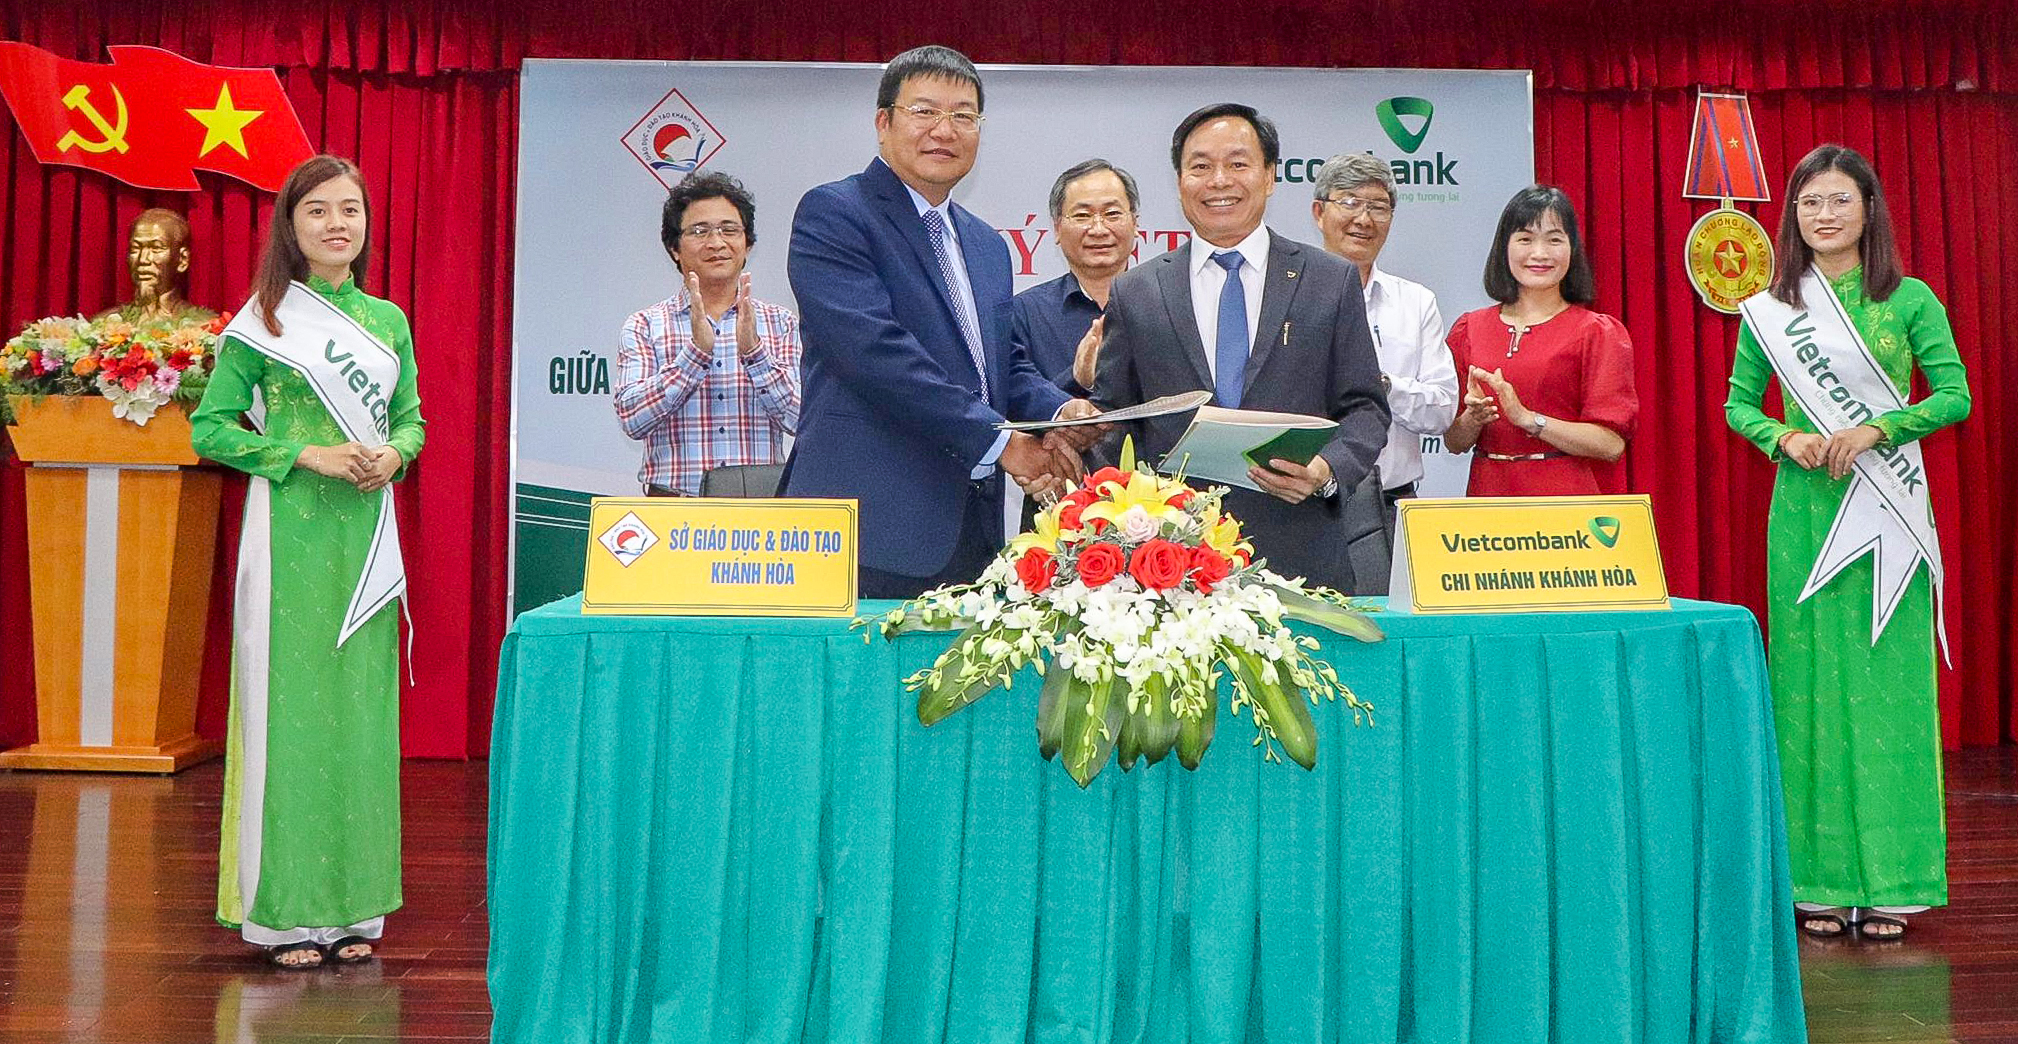 Vietcombank Khánh Hòa ký thỏa thuận hợp tác với Sở giáo dục và đào tạo Khánh Hòa phát triển các phương tiện thanh toán không dùng tiền mặt